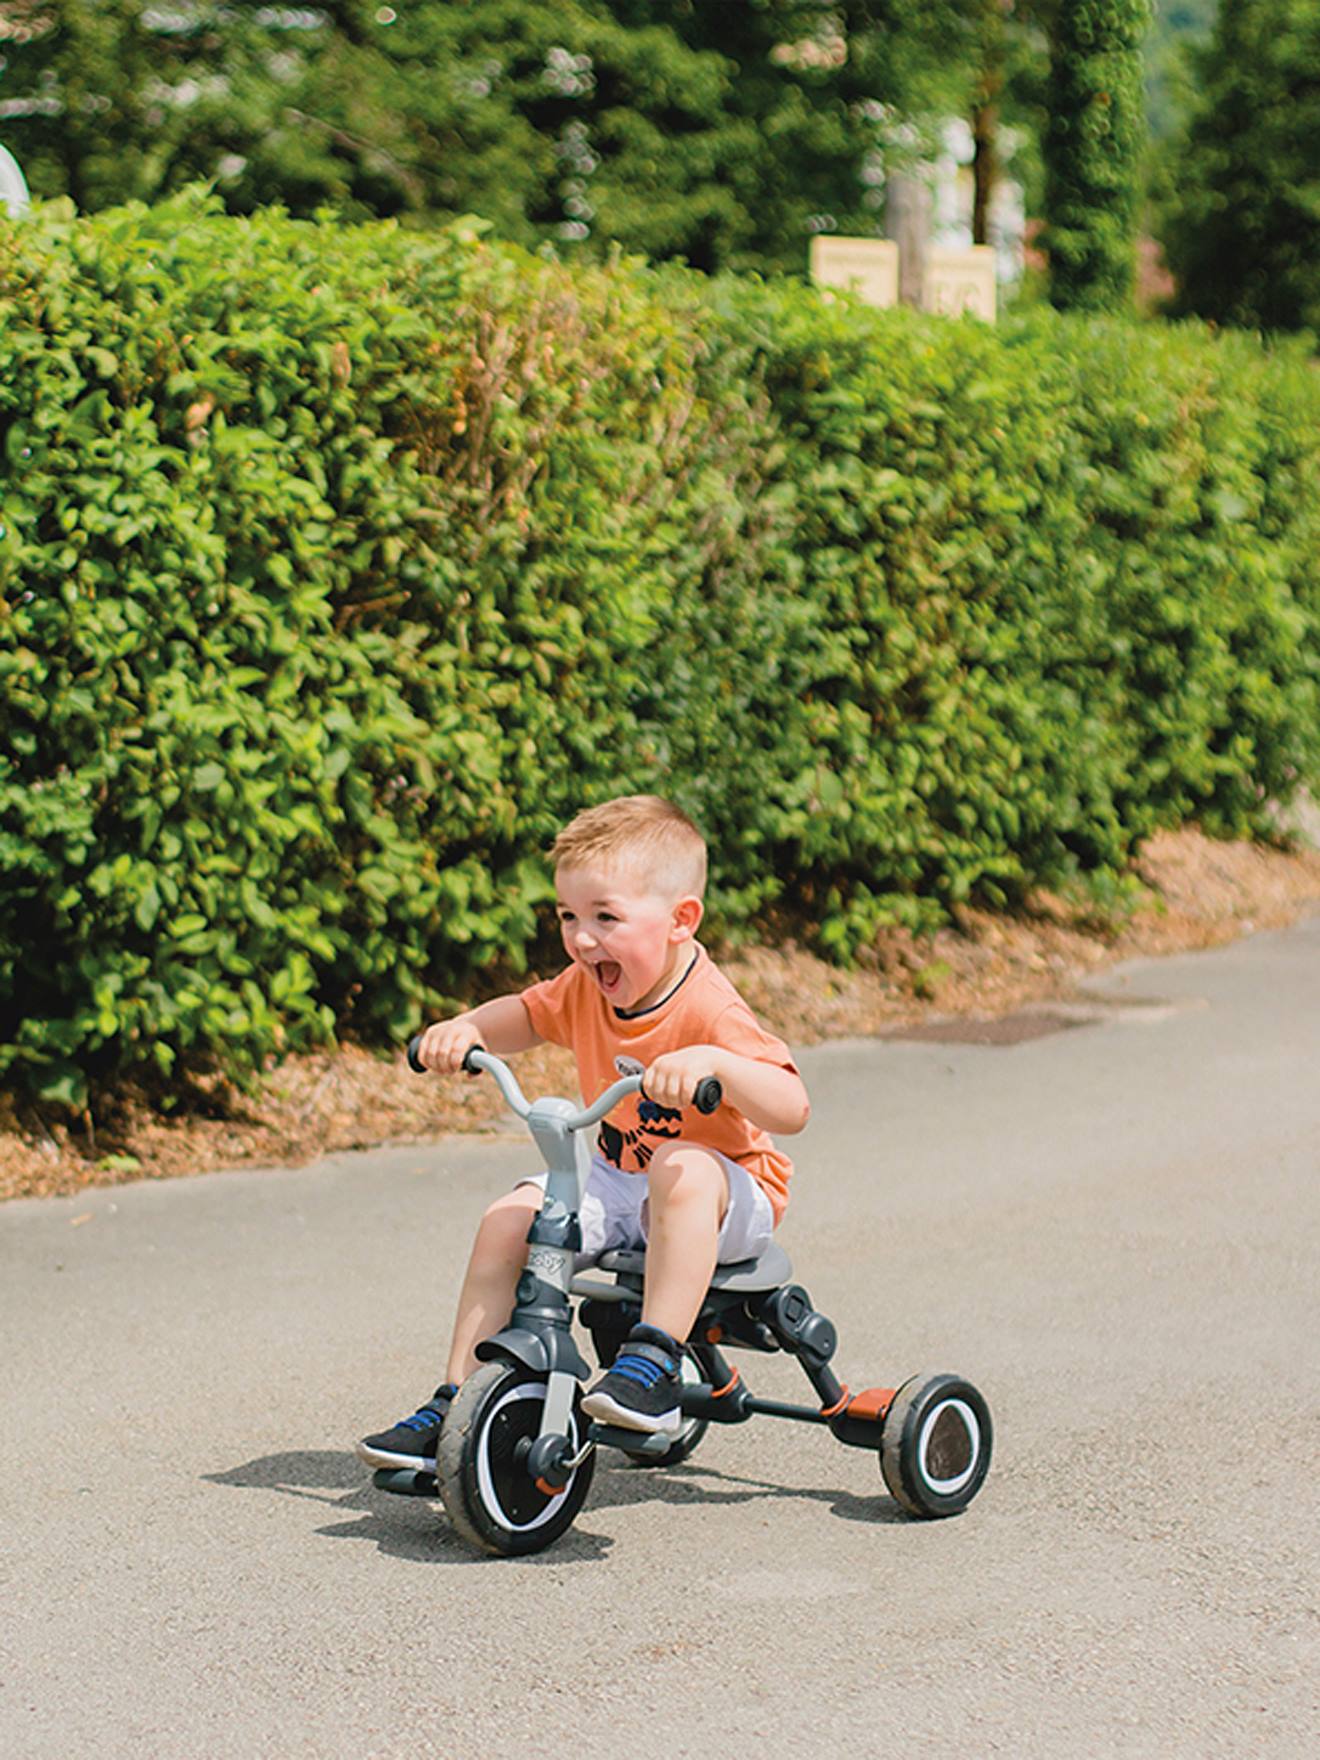 Smoby - Tricycle Baby Driver Plus Gris - Vélo Evolutif Enfant Des 10 Mois -  Roues Silencieuses - Frein de Parking - La Poste